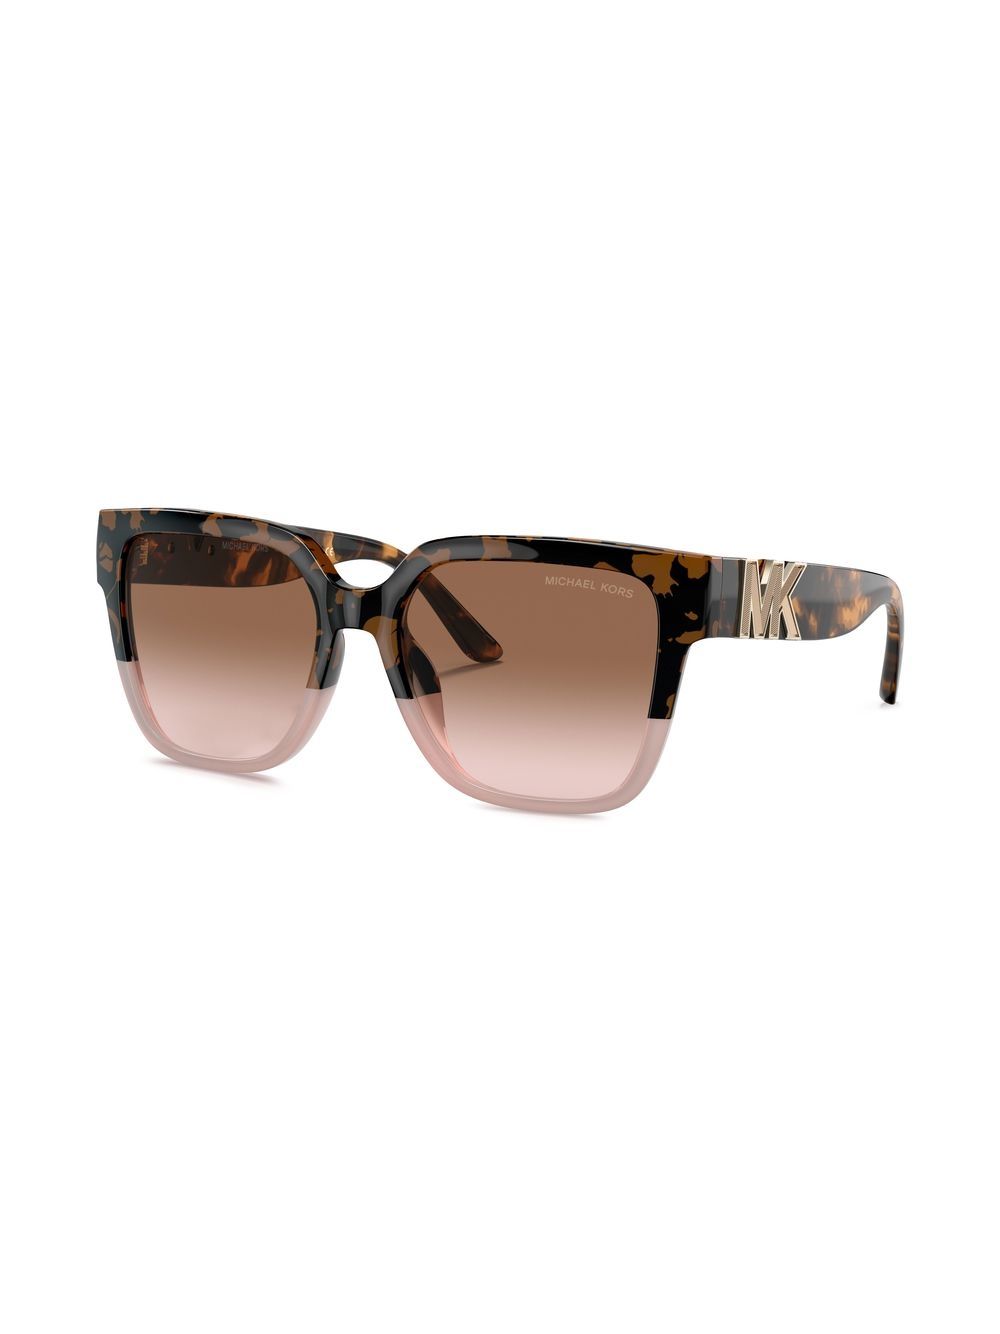 Michael Kors Karlie Tortoise-Shell Oversized Sunglasses - Brown